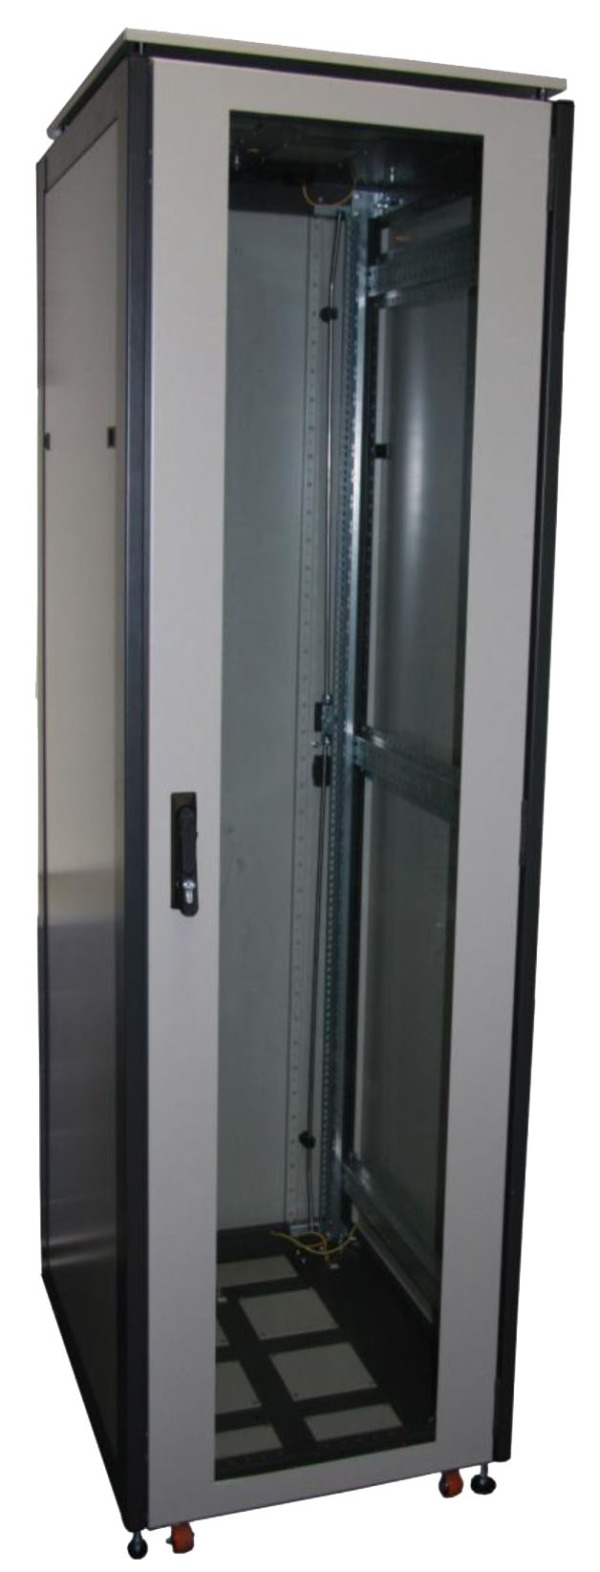 ССКТБ ТОМАСС ШТК-8820Э-00 - шкаф телекоммуникационный 19", 42U, 800х800х2000 мм, с металлической и стеклянной дверью